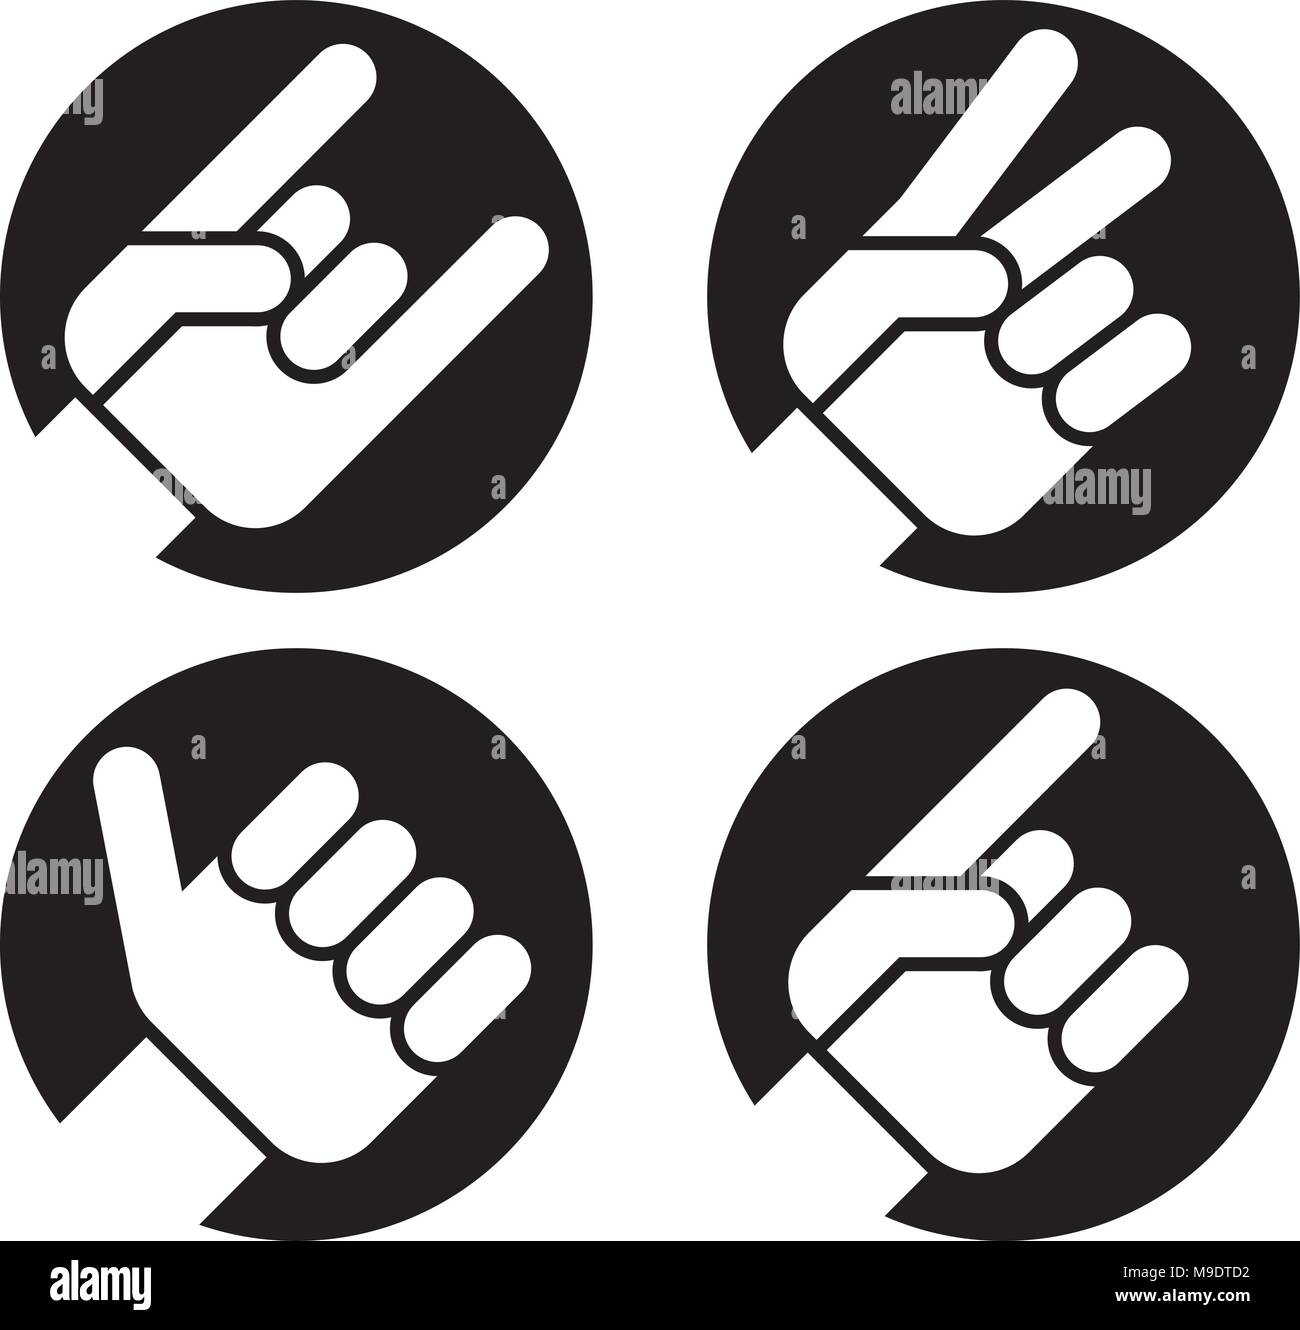 Vier flache Hand Geste Vector Icons der Hände bilden klassische erkennbare Zeichen. Enthält Zeichen der Hörner, Friedenszeichen, Daumen hoch und zeigt. Stock Vektor